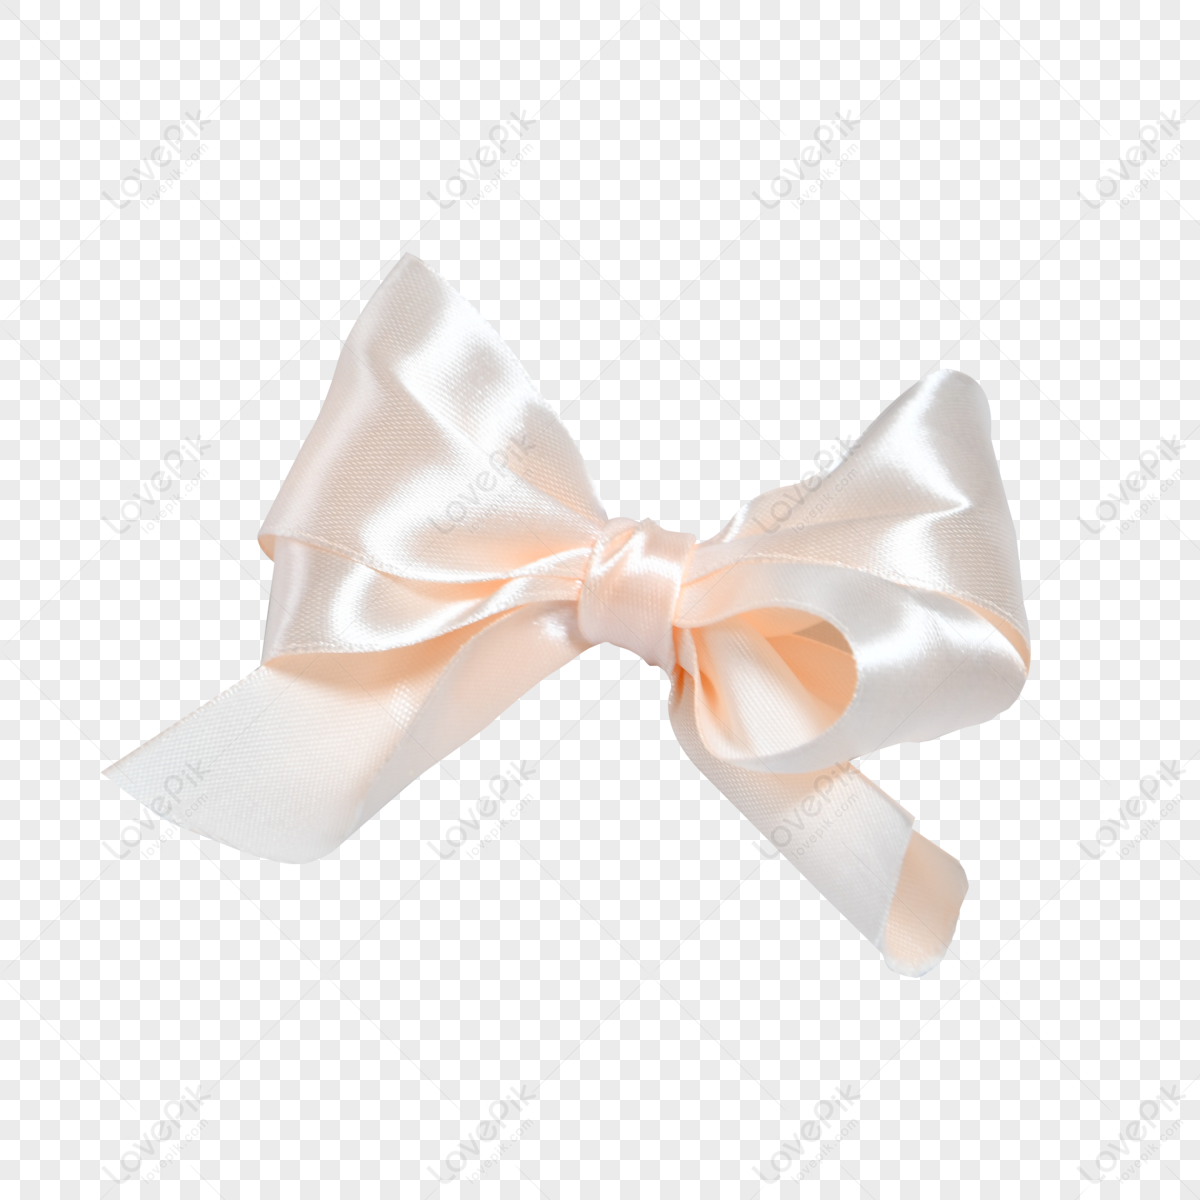 Download Pink Satin Ribbon Bow PNG  Fancy bows, Bow image, Satin ribbon bow